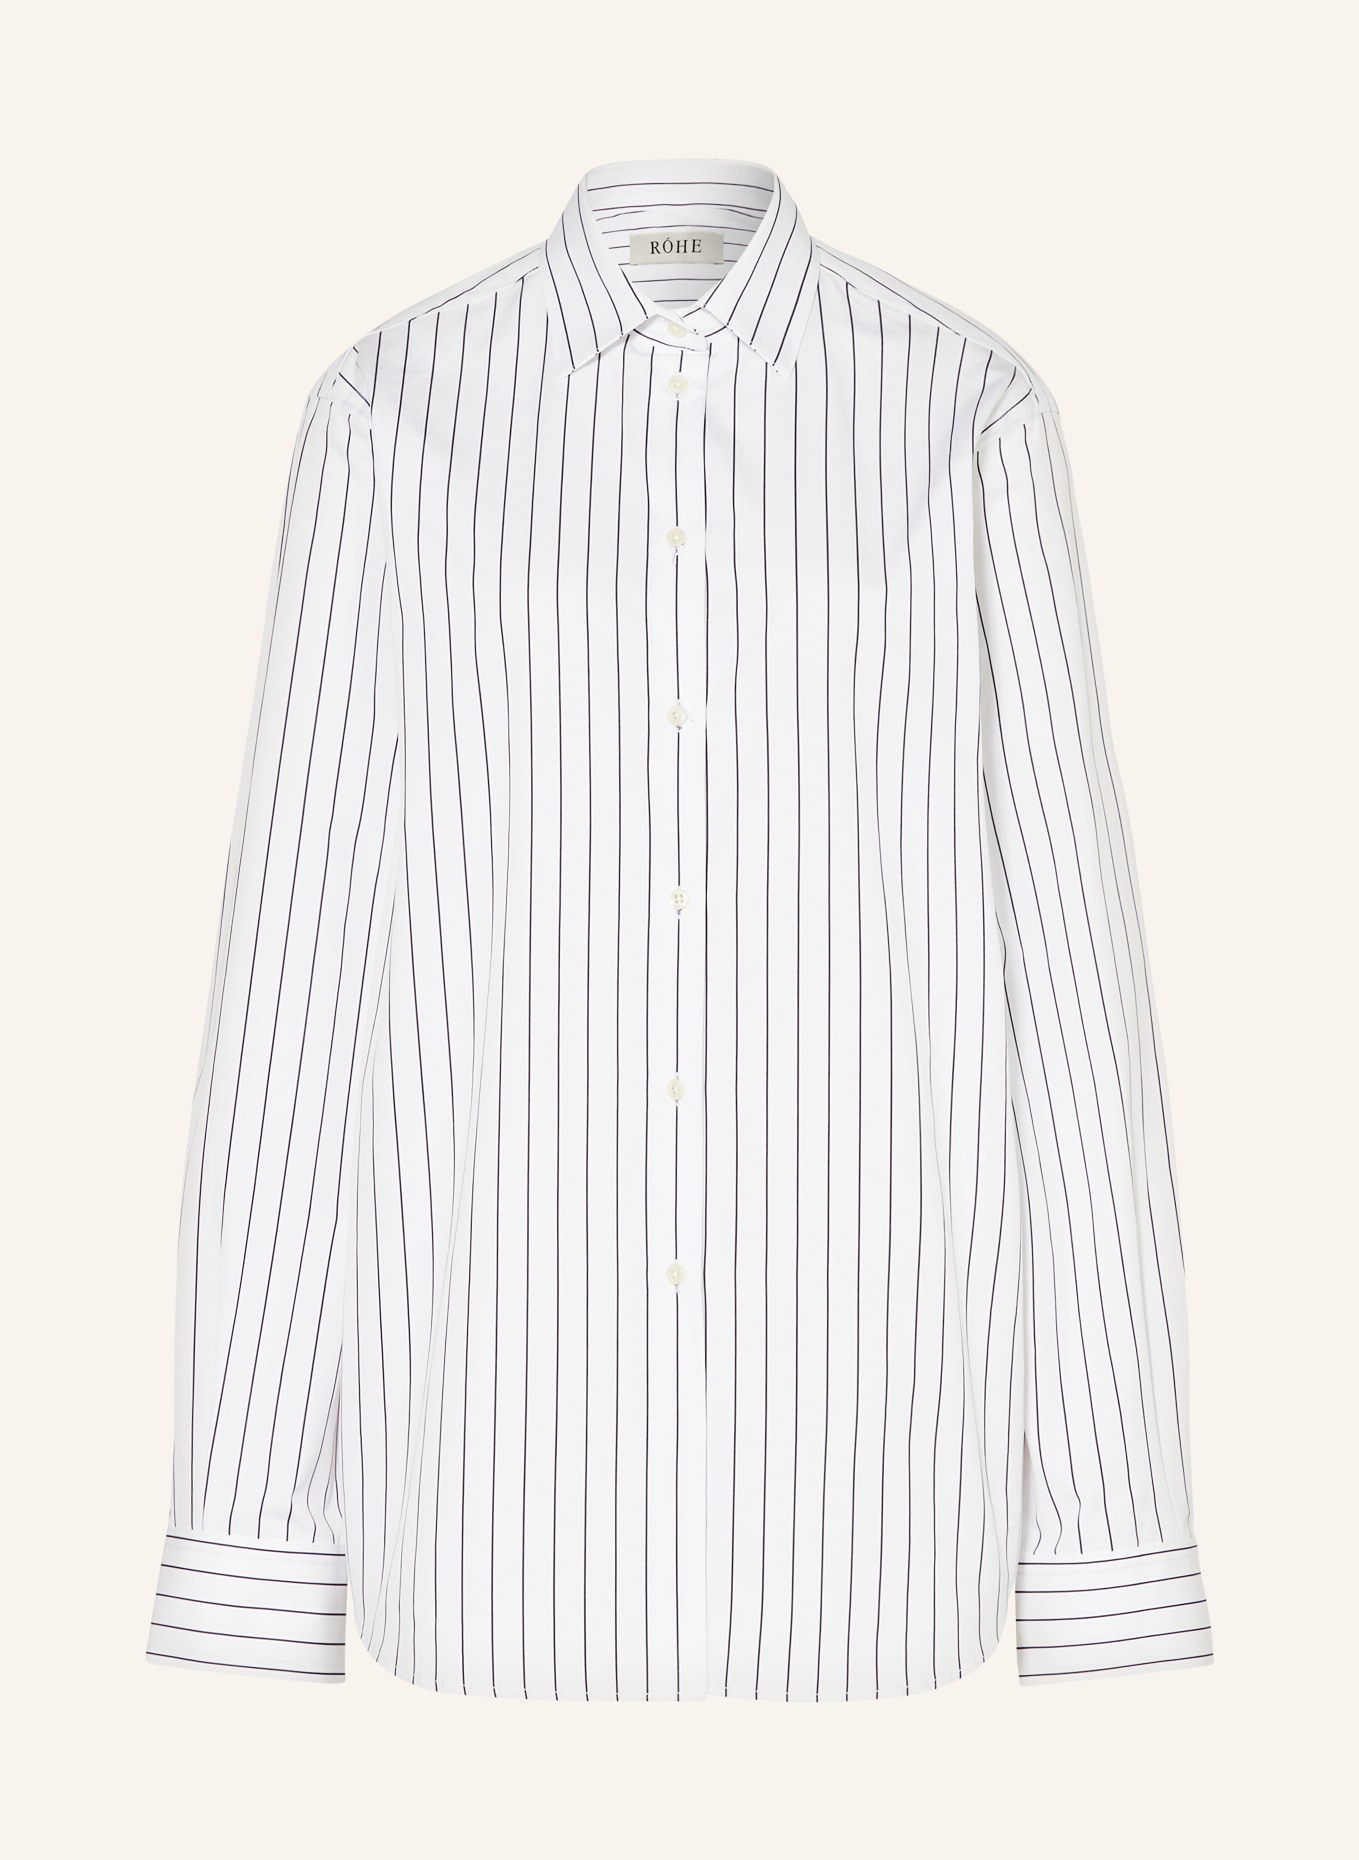 RÓHE Shirt blouse, Color: WHITE/ BLACK (Image 1)